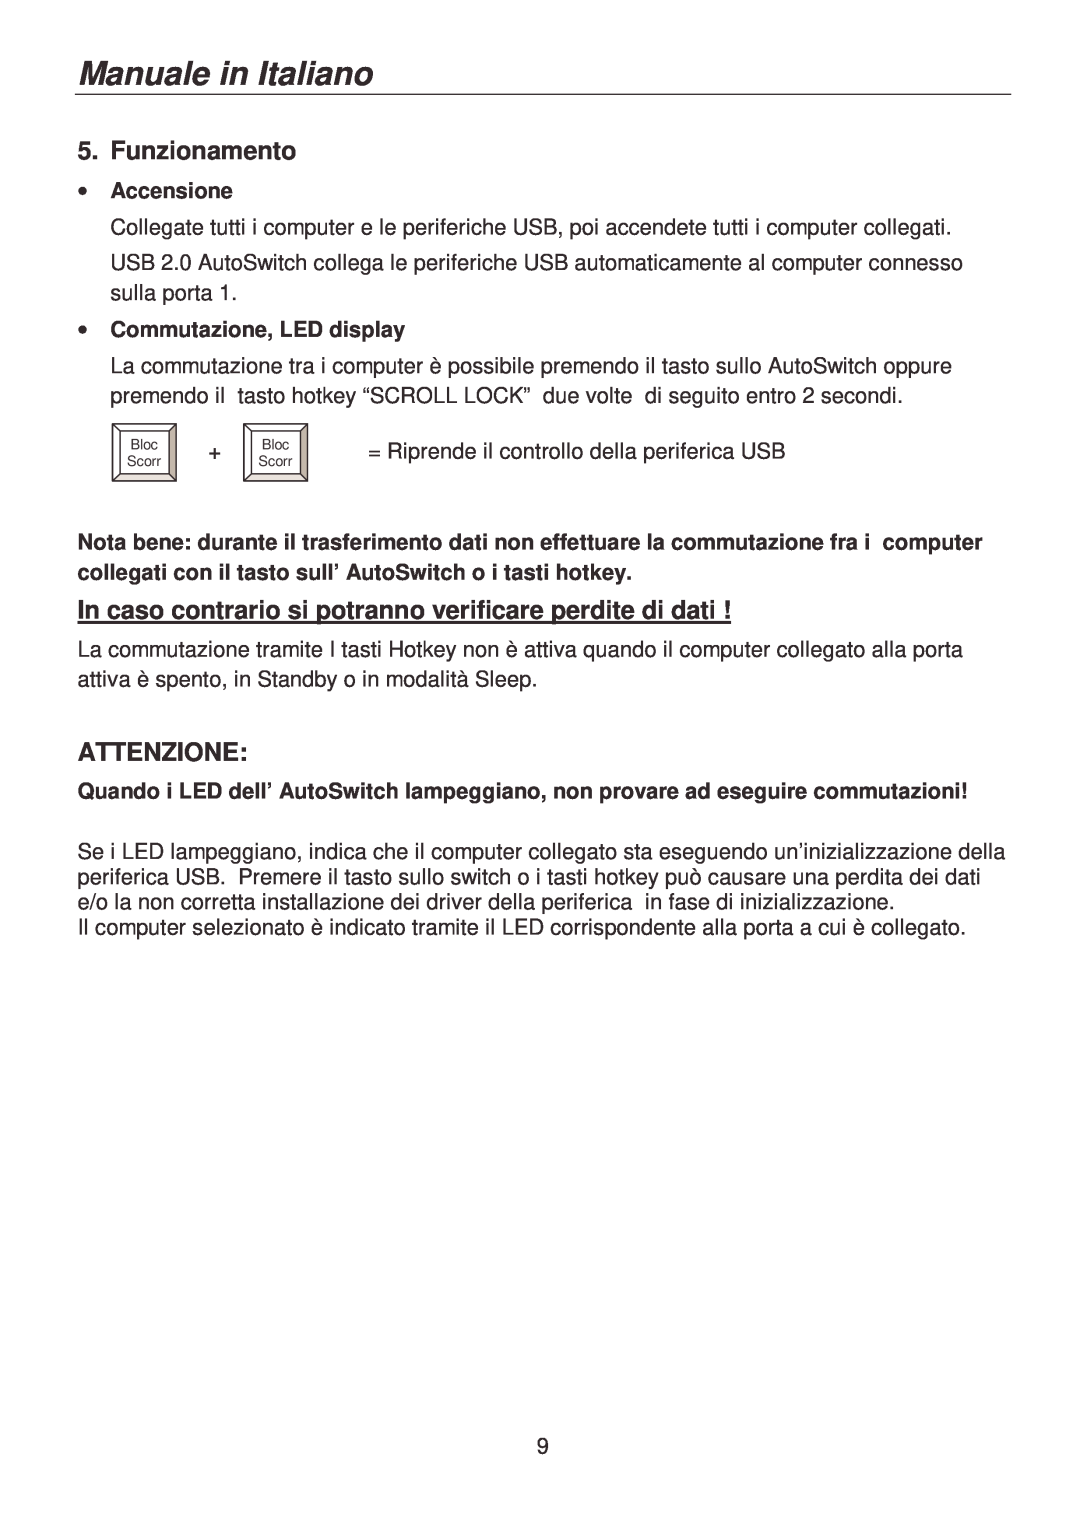 Lindy 42904 user manual Funzionamento, Attenzione, Accensione, Commutazione, LED display, Manuale in Italiano 